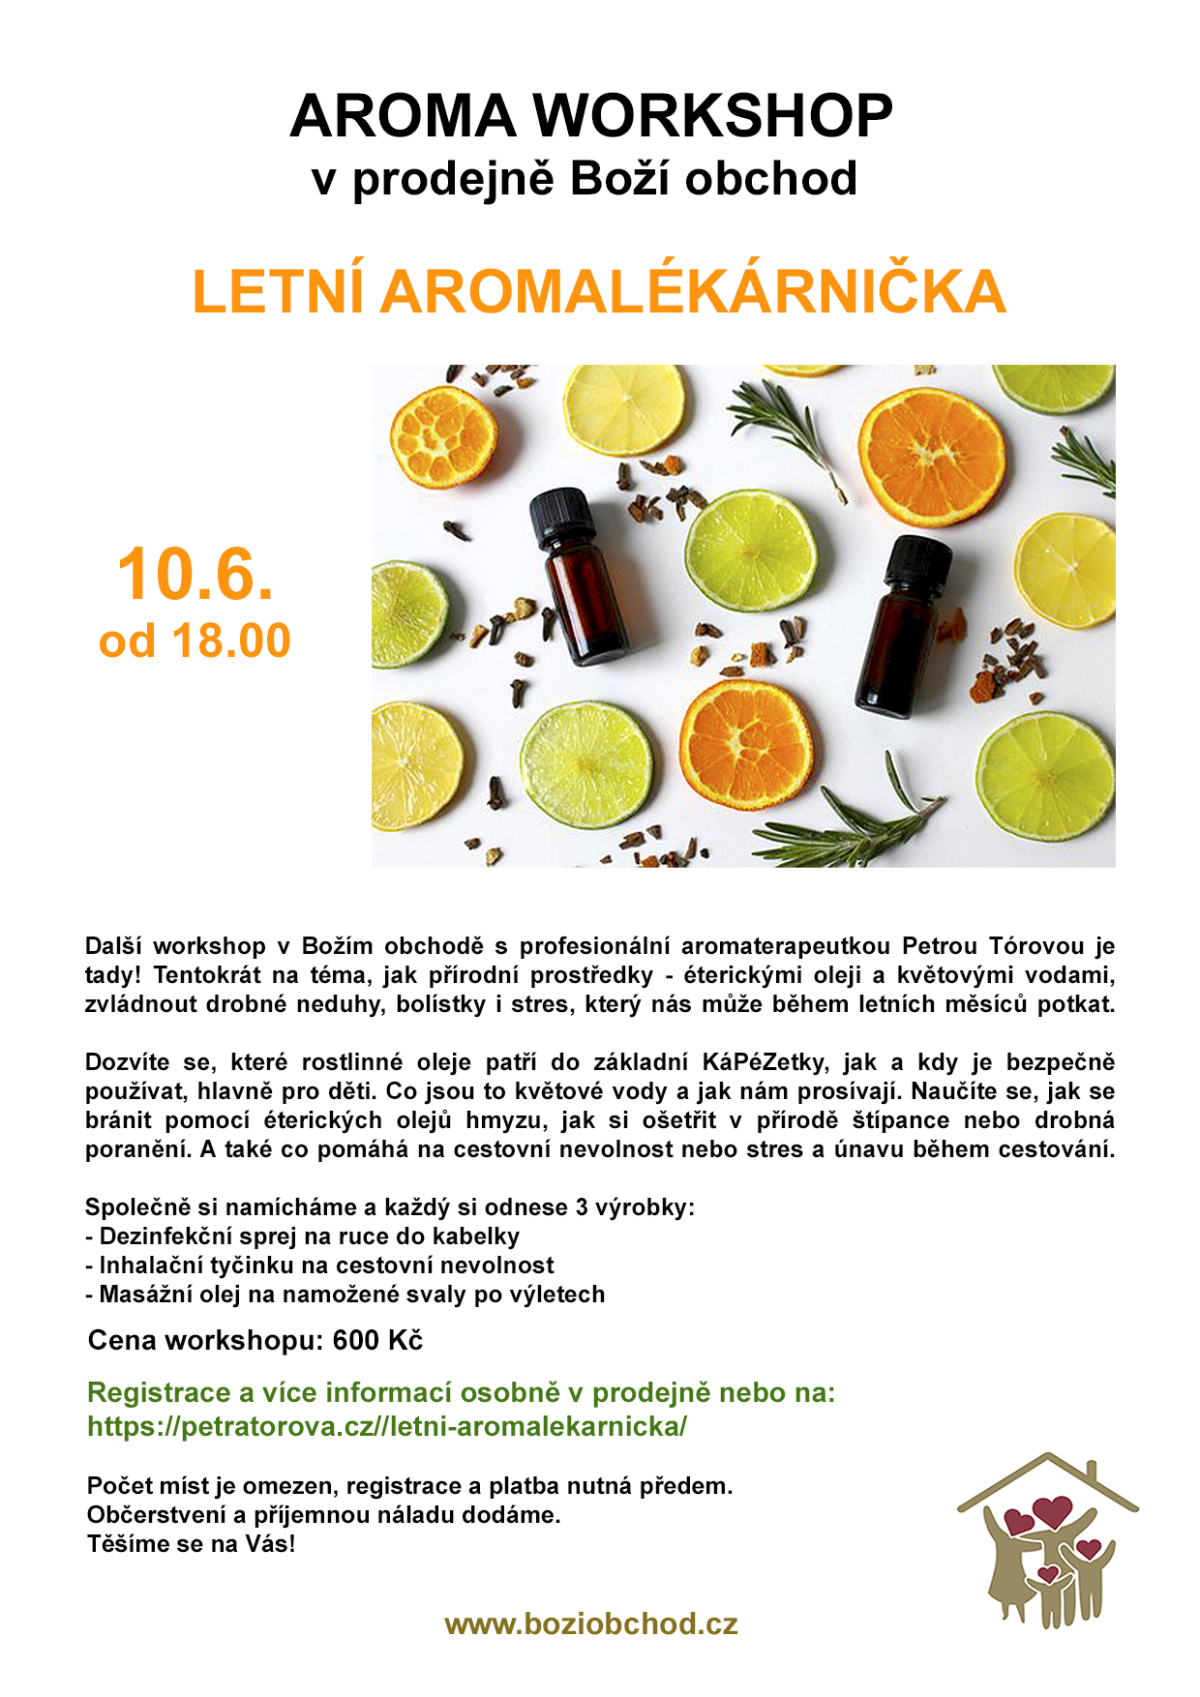 Aroma workshop: Letní přírodní lékárnička